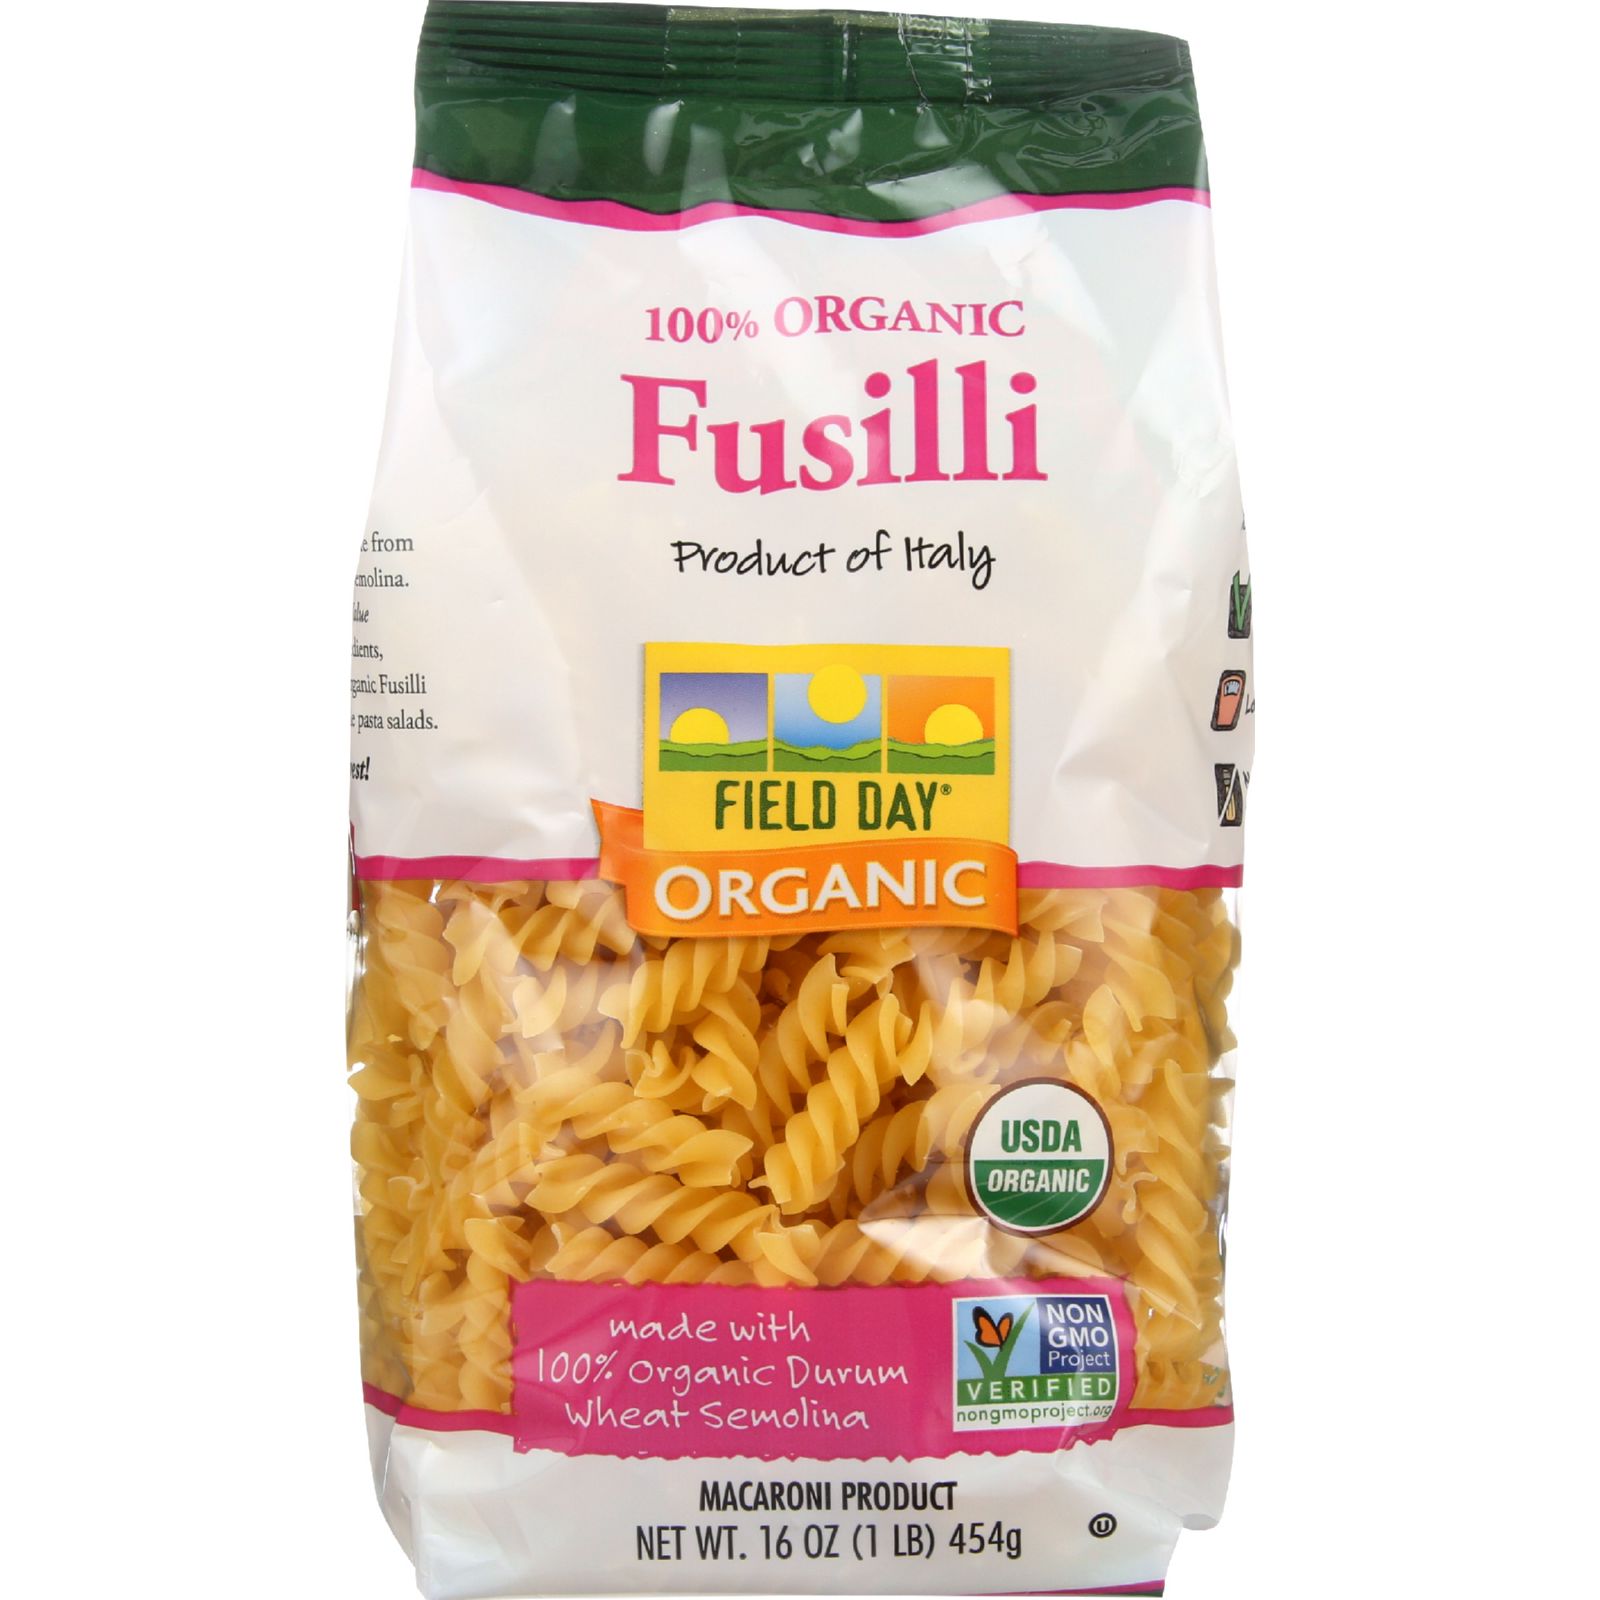 Field Day Traditional Fusilli Pasta (12x16 Oz)